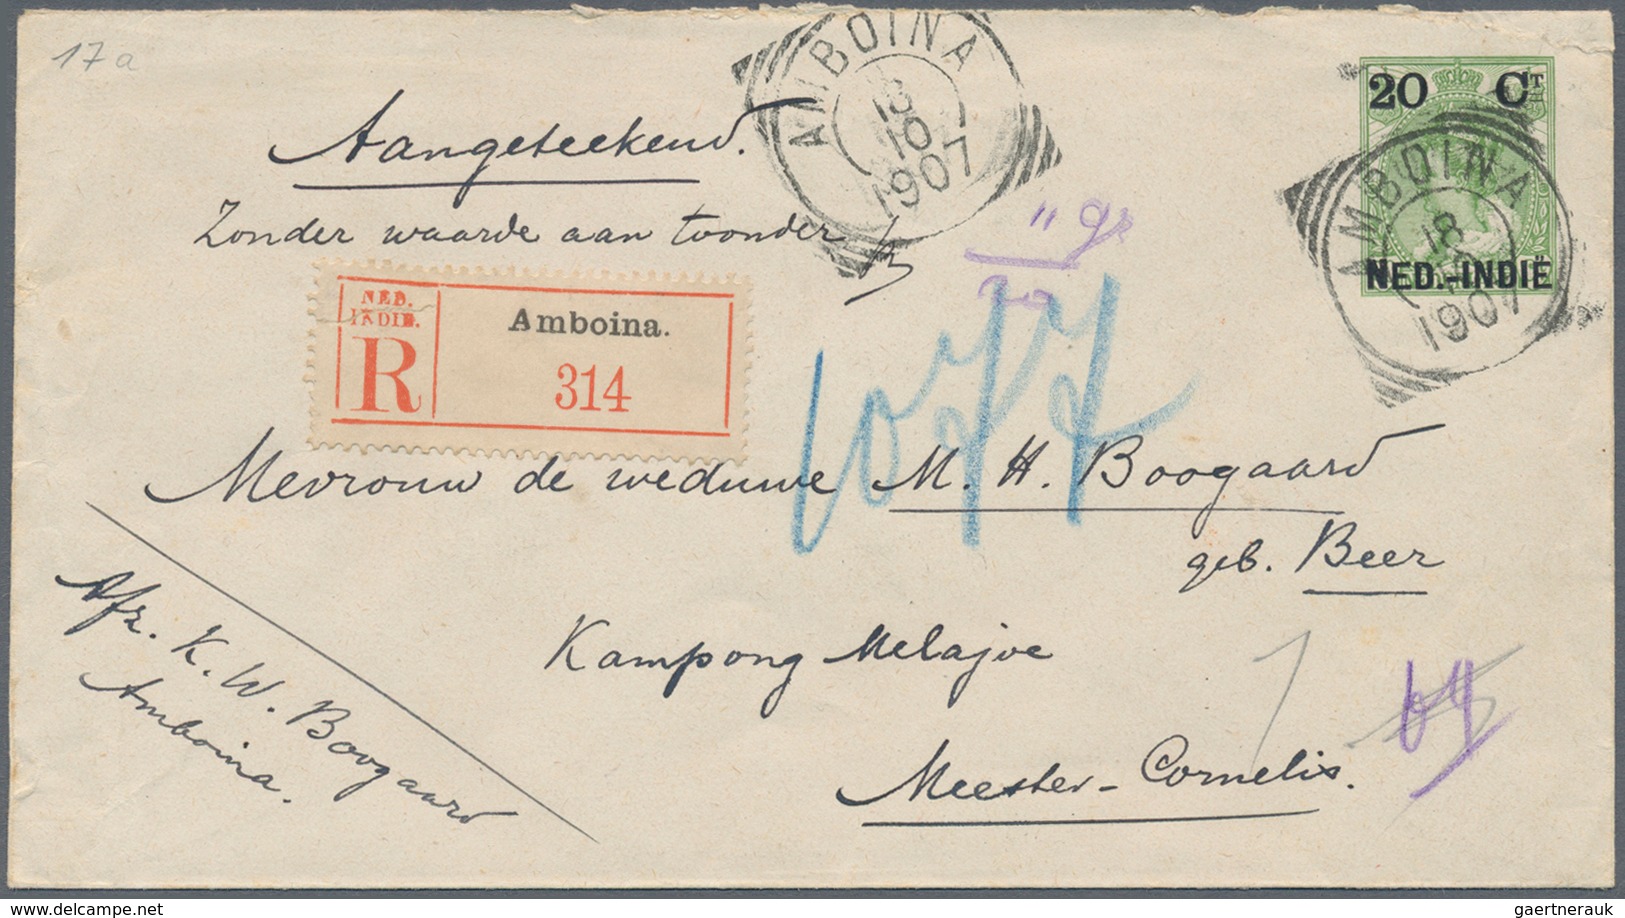 Niederländisch-Indien: 1906, Stationery Envelope 20 C. Canc. "AMBOINA 18 10 1907" Registered Inland - Netherlands Indies